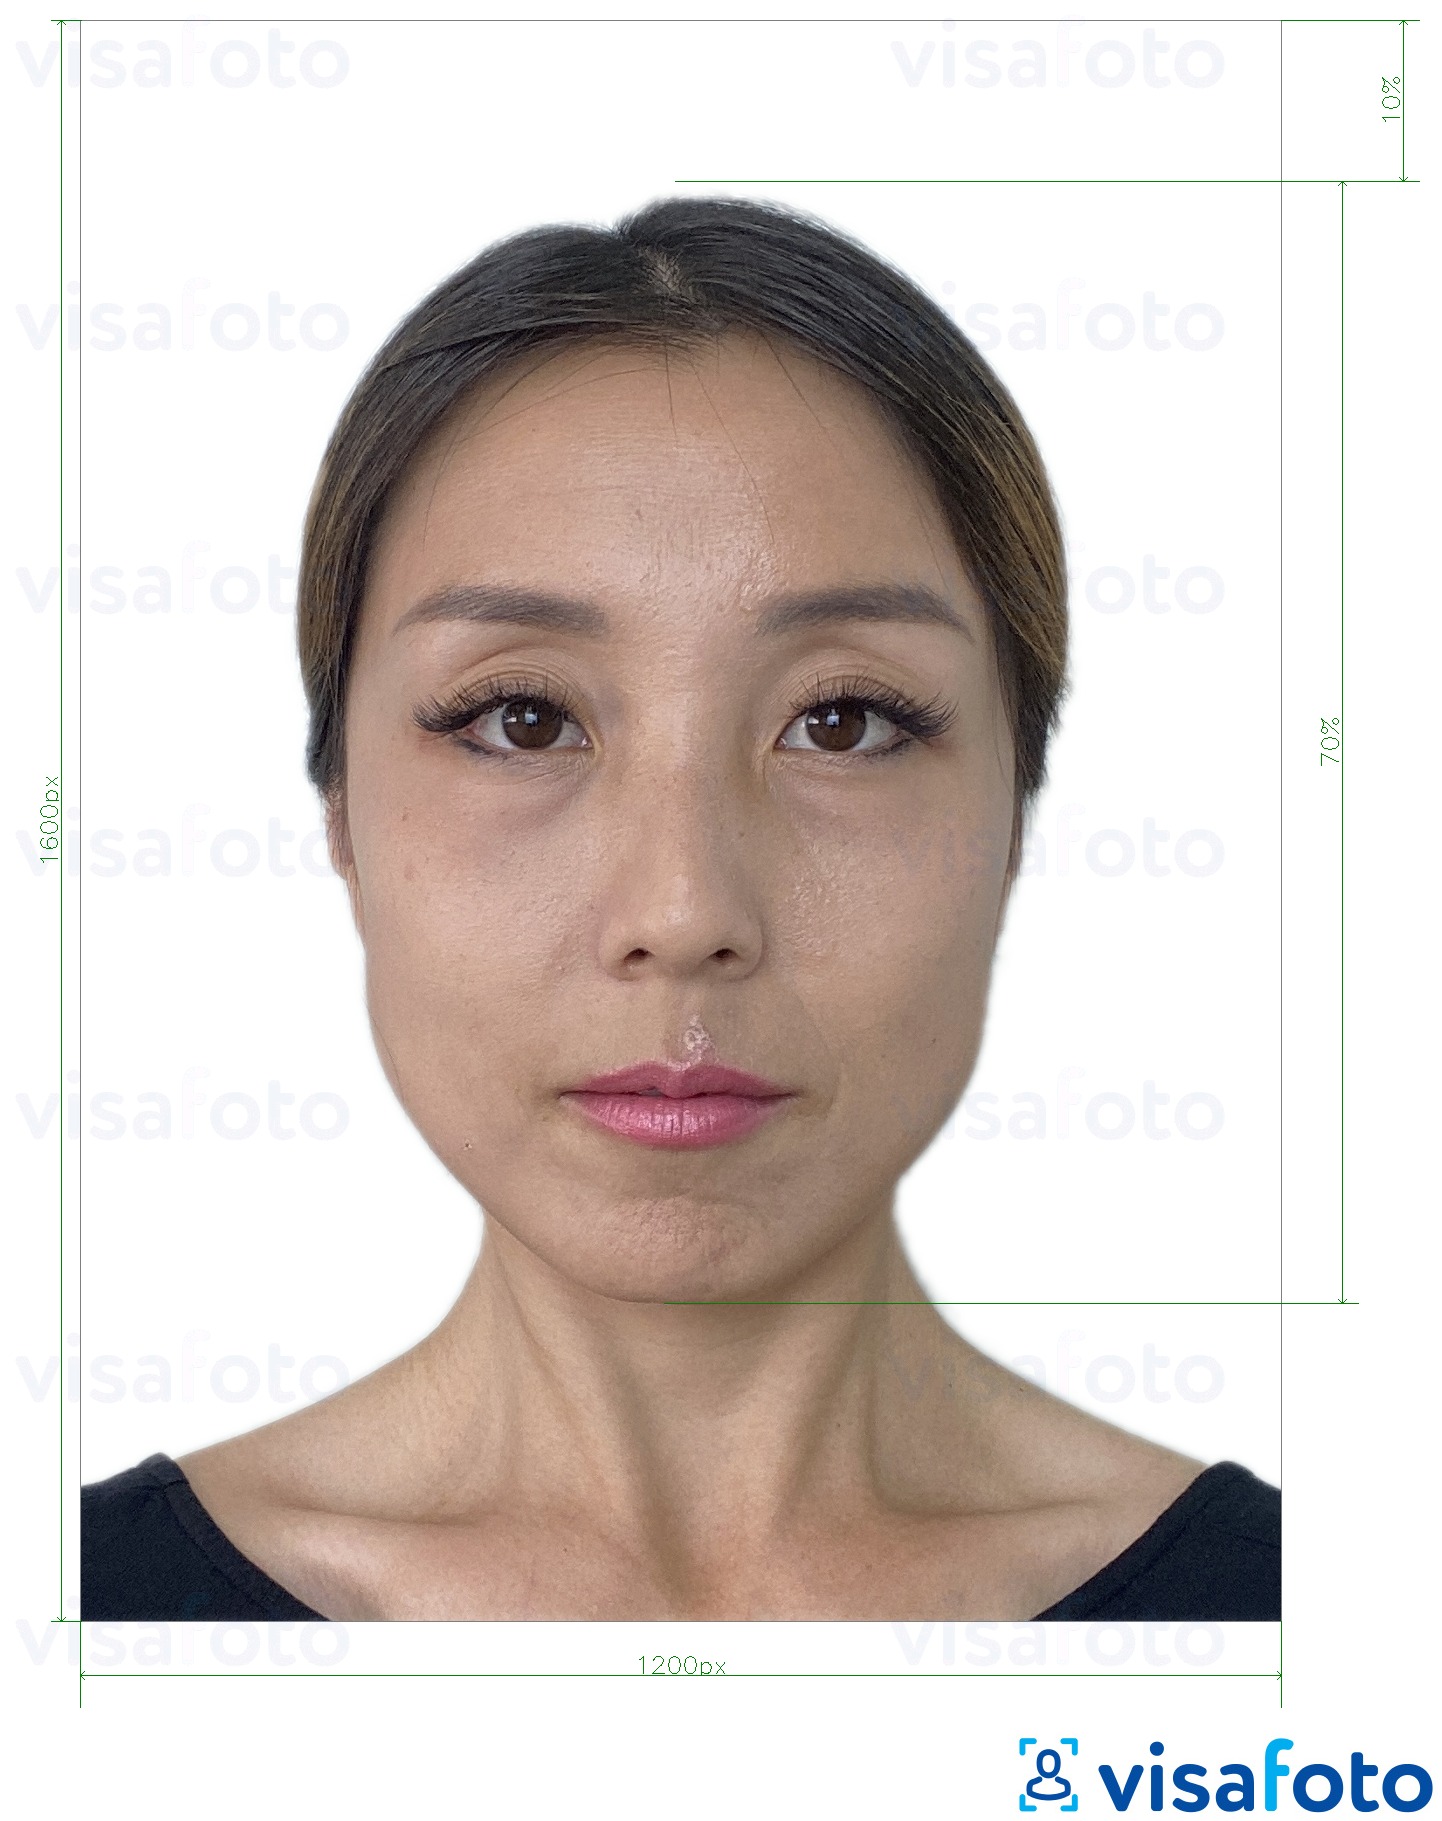 Contoh foto untuk Hong Kong online e-visa 1200x1600 piksel dengan spesifikasi saiz yang tepat.